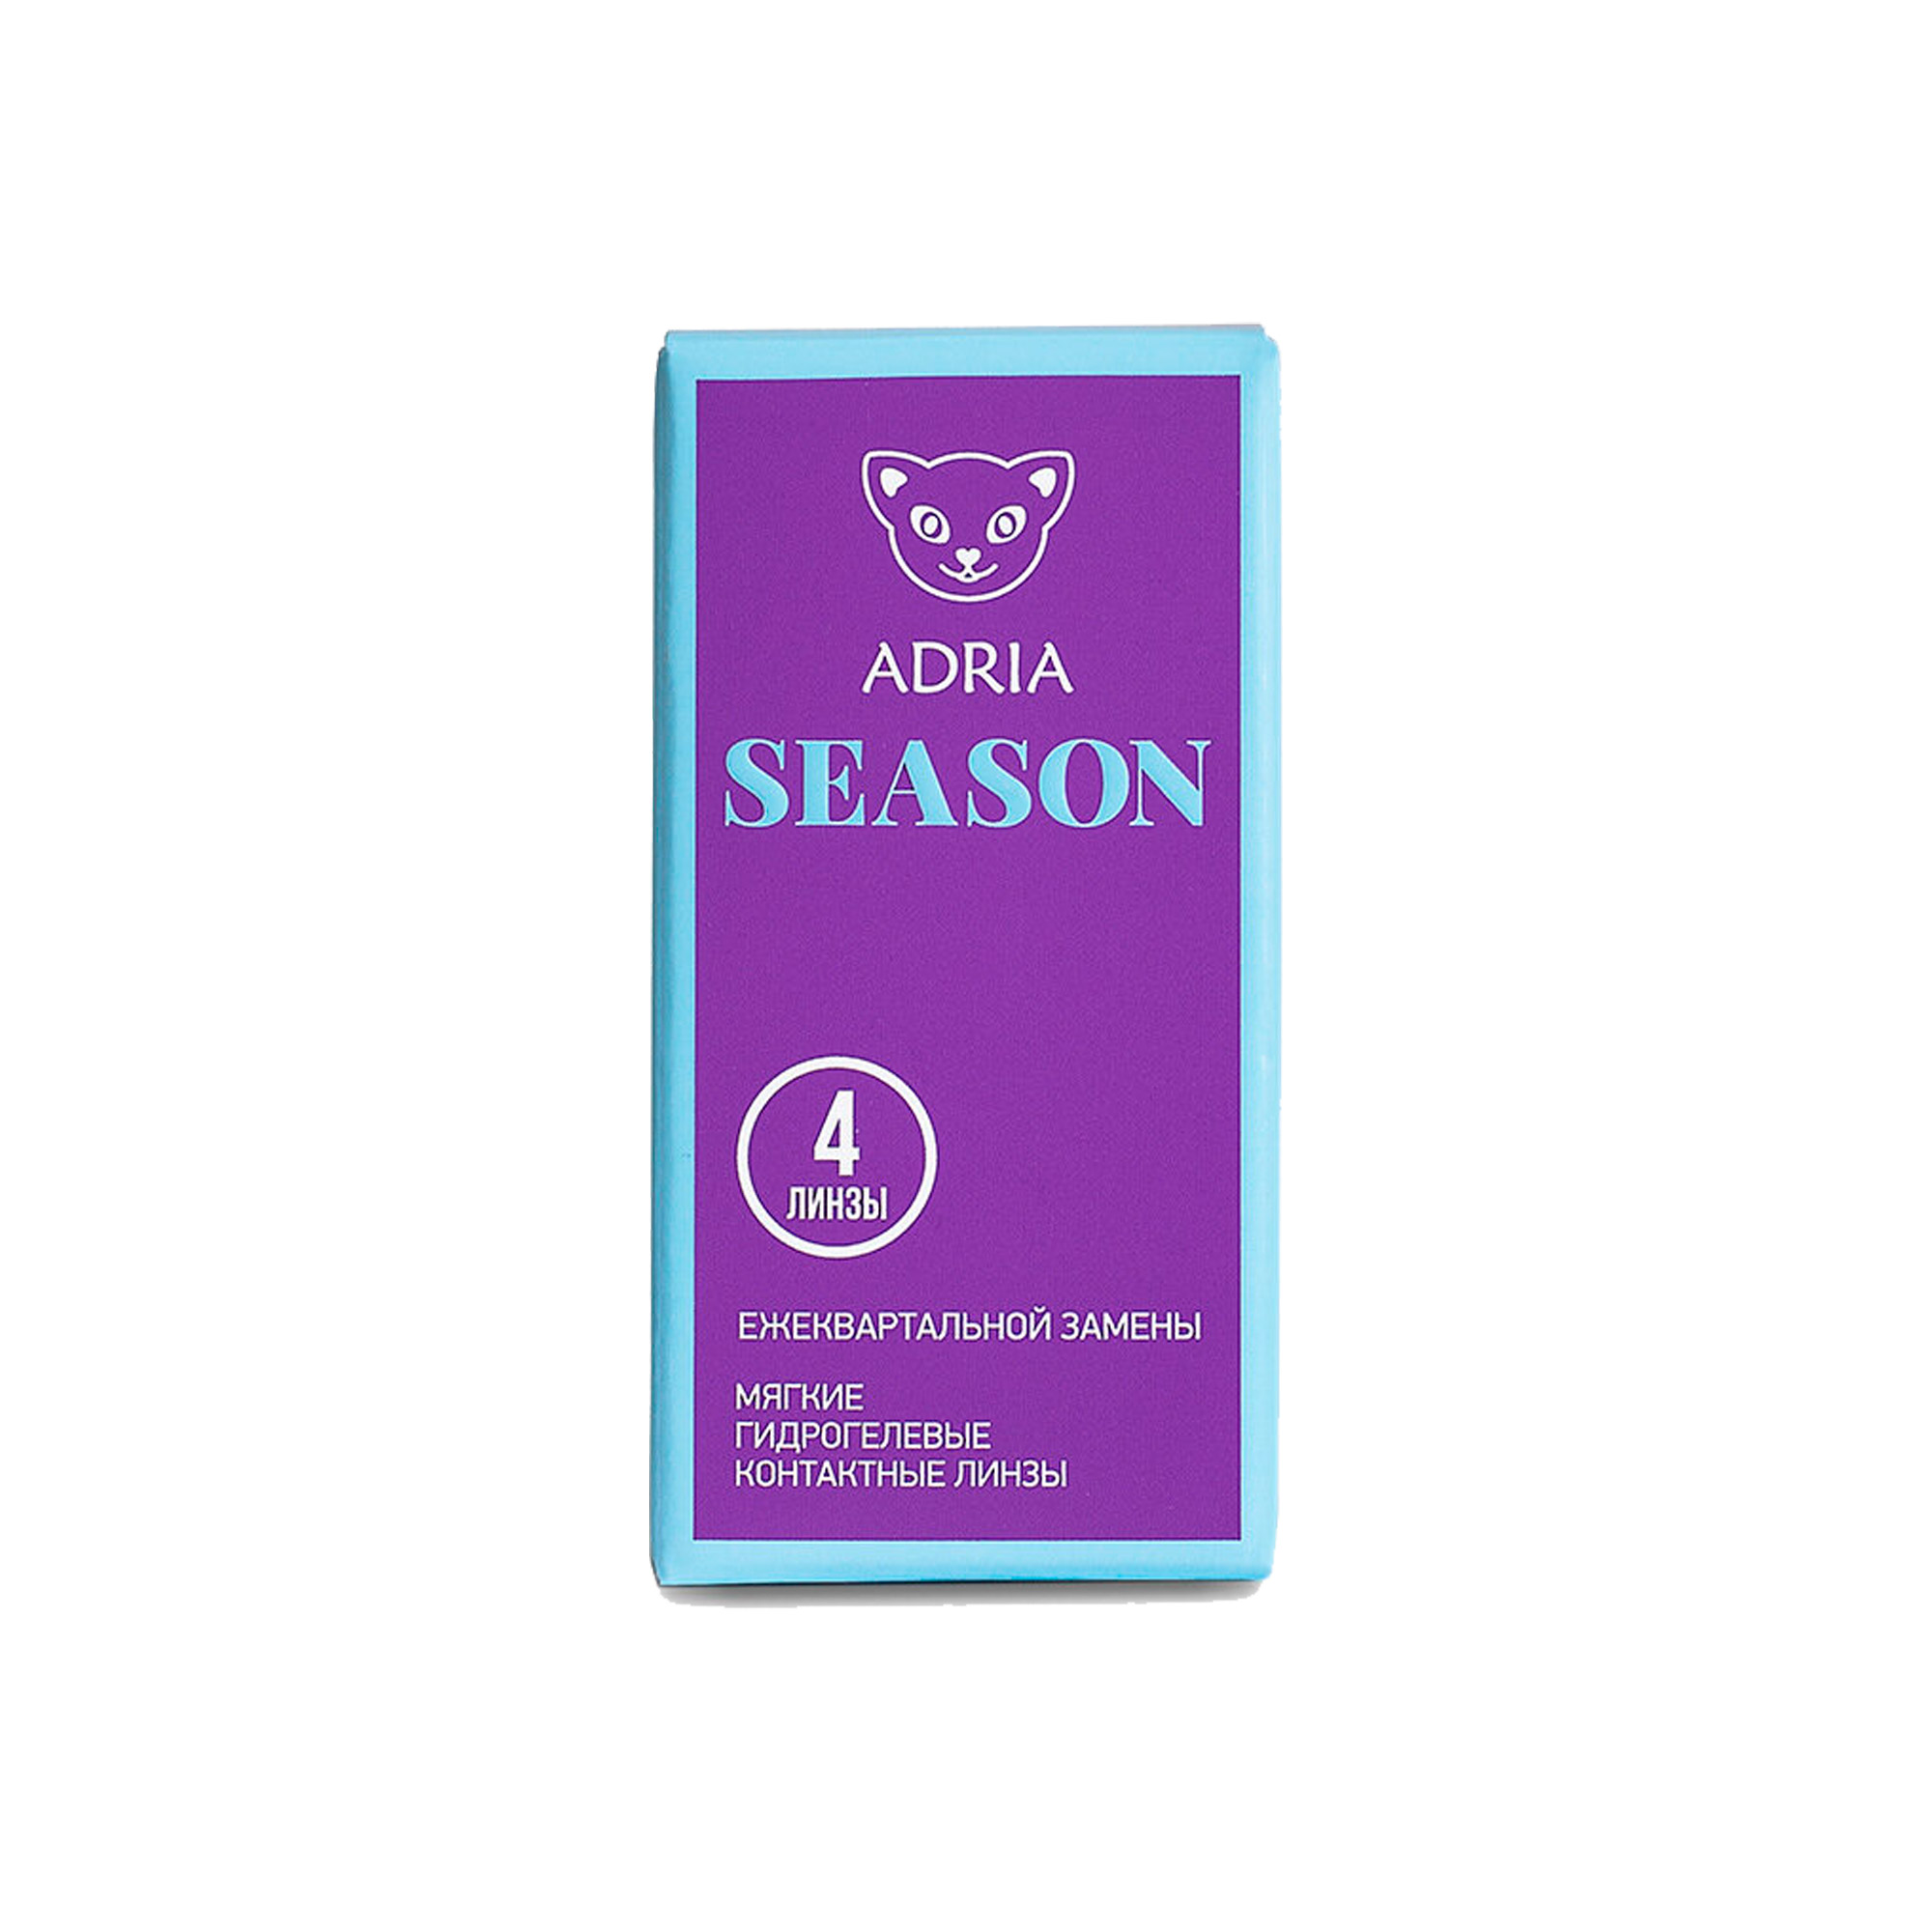 Контактные линзы Morning Q38 (4 pack) adria season